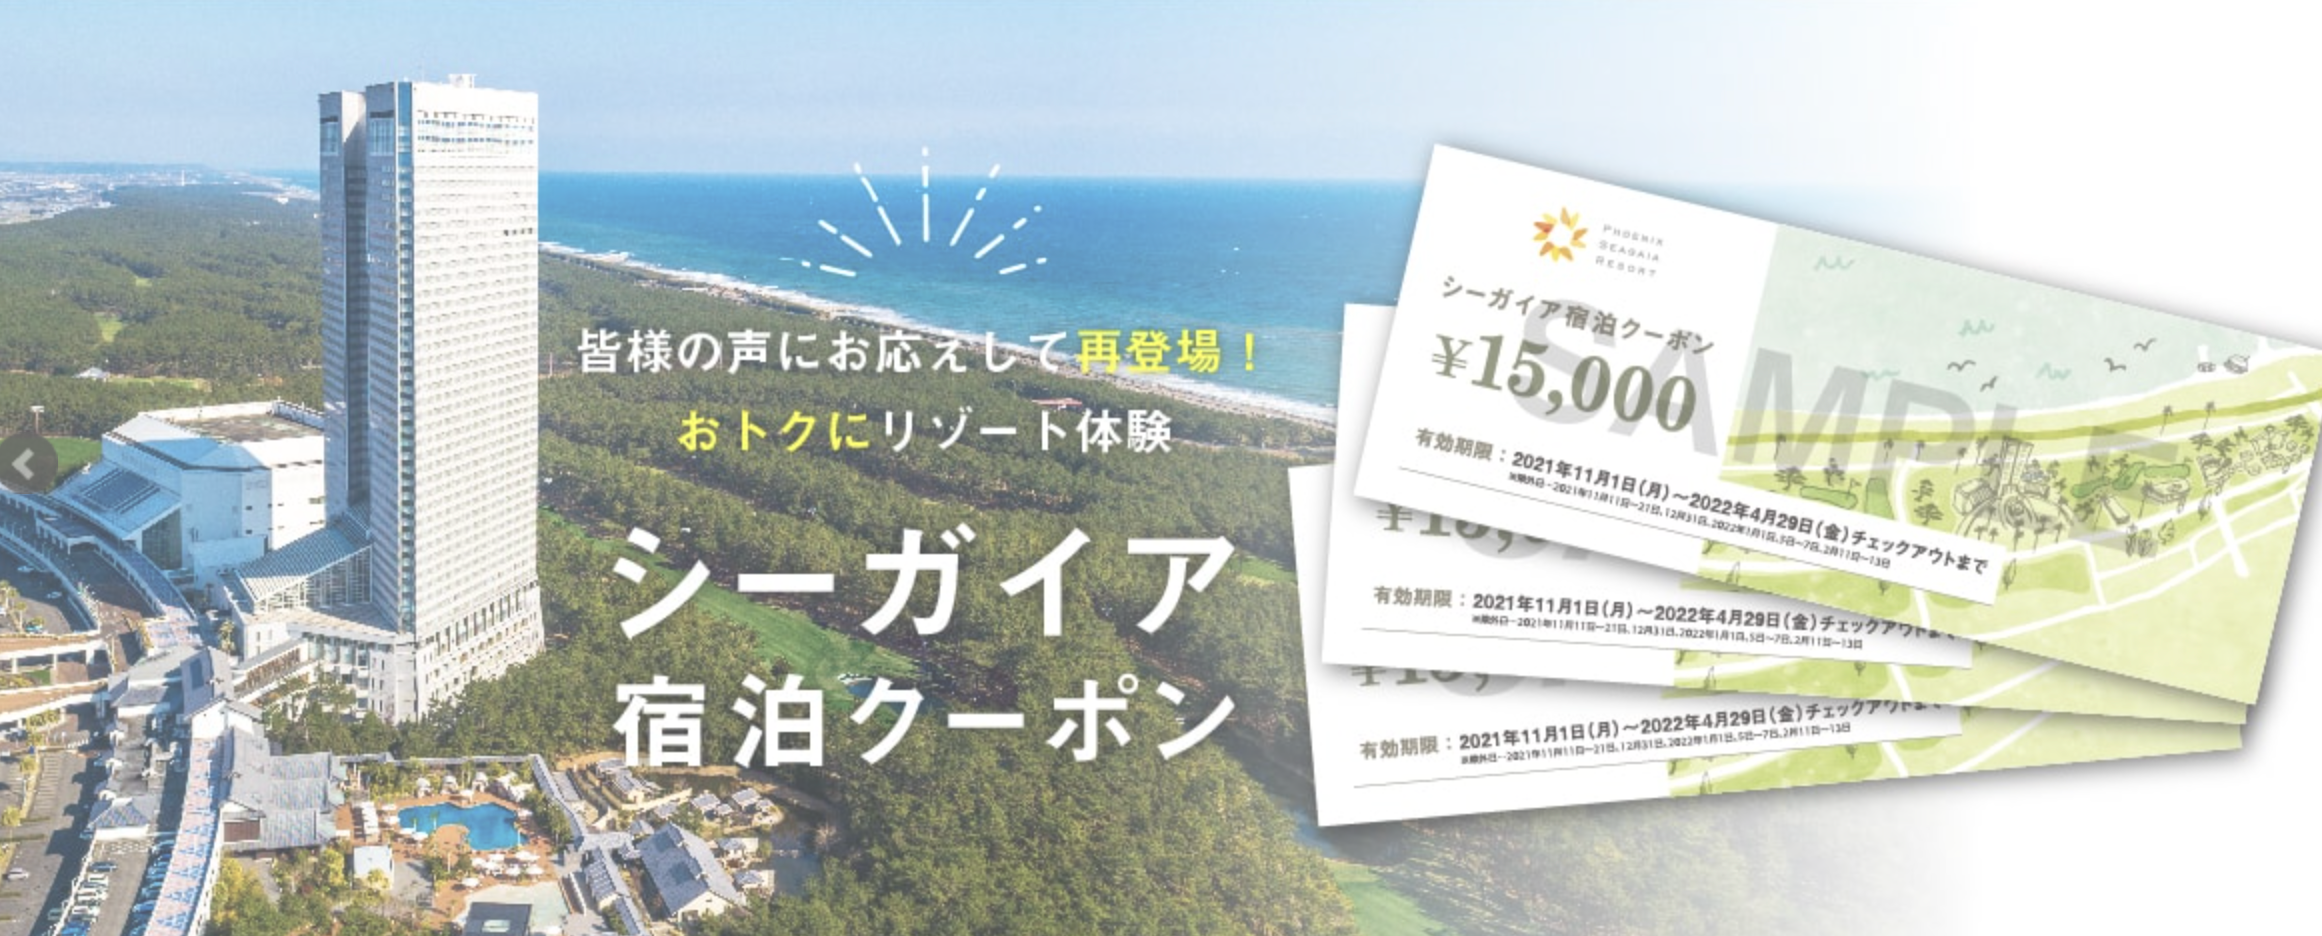 愛用 シーガイア シェラトン宮崎 宿泊クーポン ¥15,000×7枚 - 宿泊券 